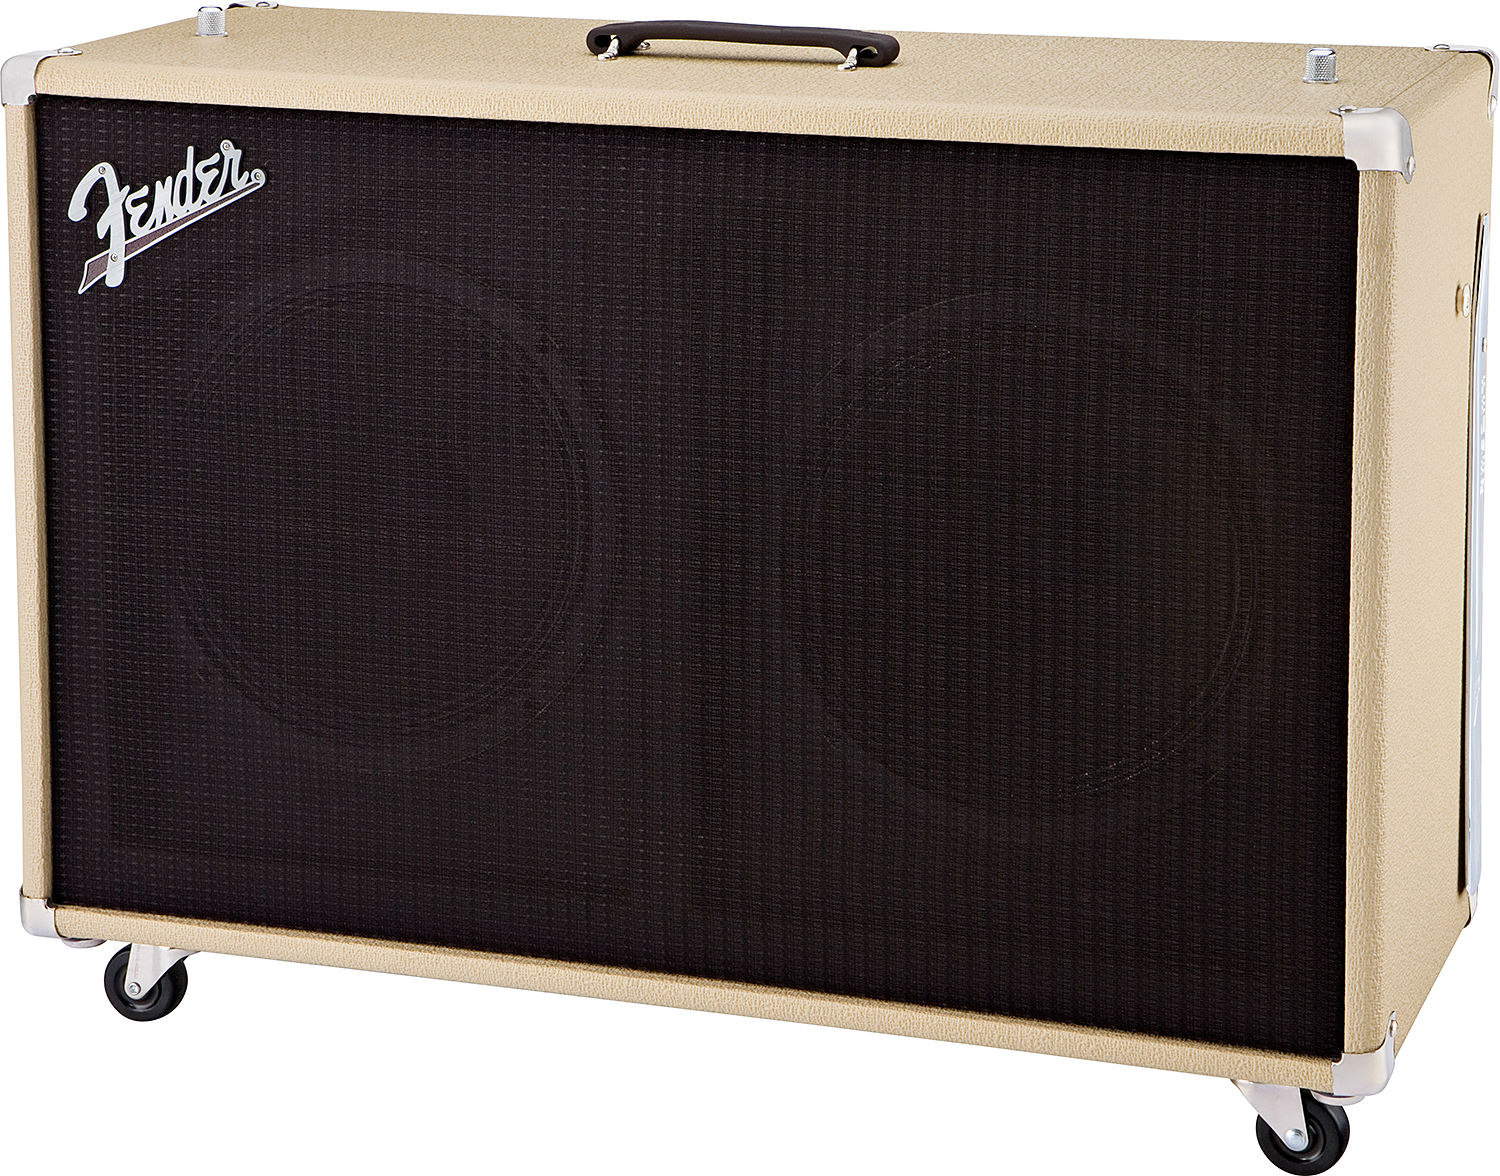 Fender Super Sonic 60 212 Enclosure 2x12 120w Blonde - Baffle Ampli Guitare Électrique - Variation 1